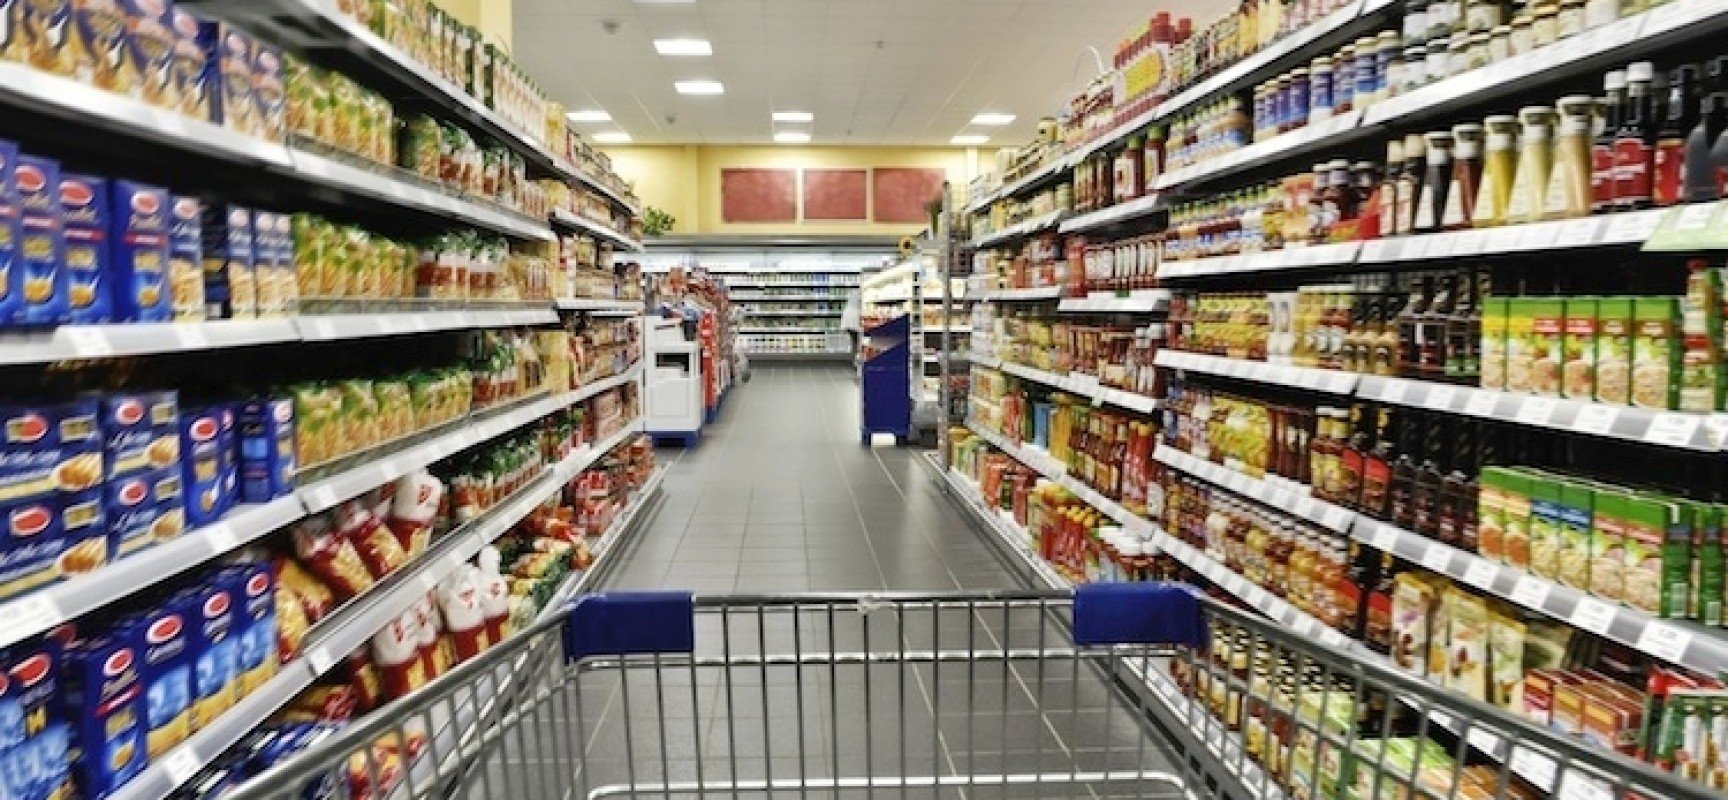 Raccolta alimentare “straordinaria” questo sabato nei supermercati Nova Coop